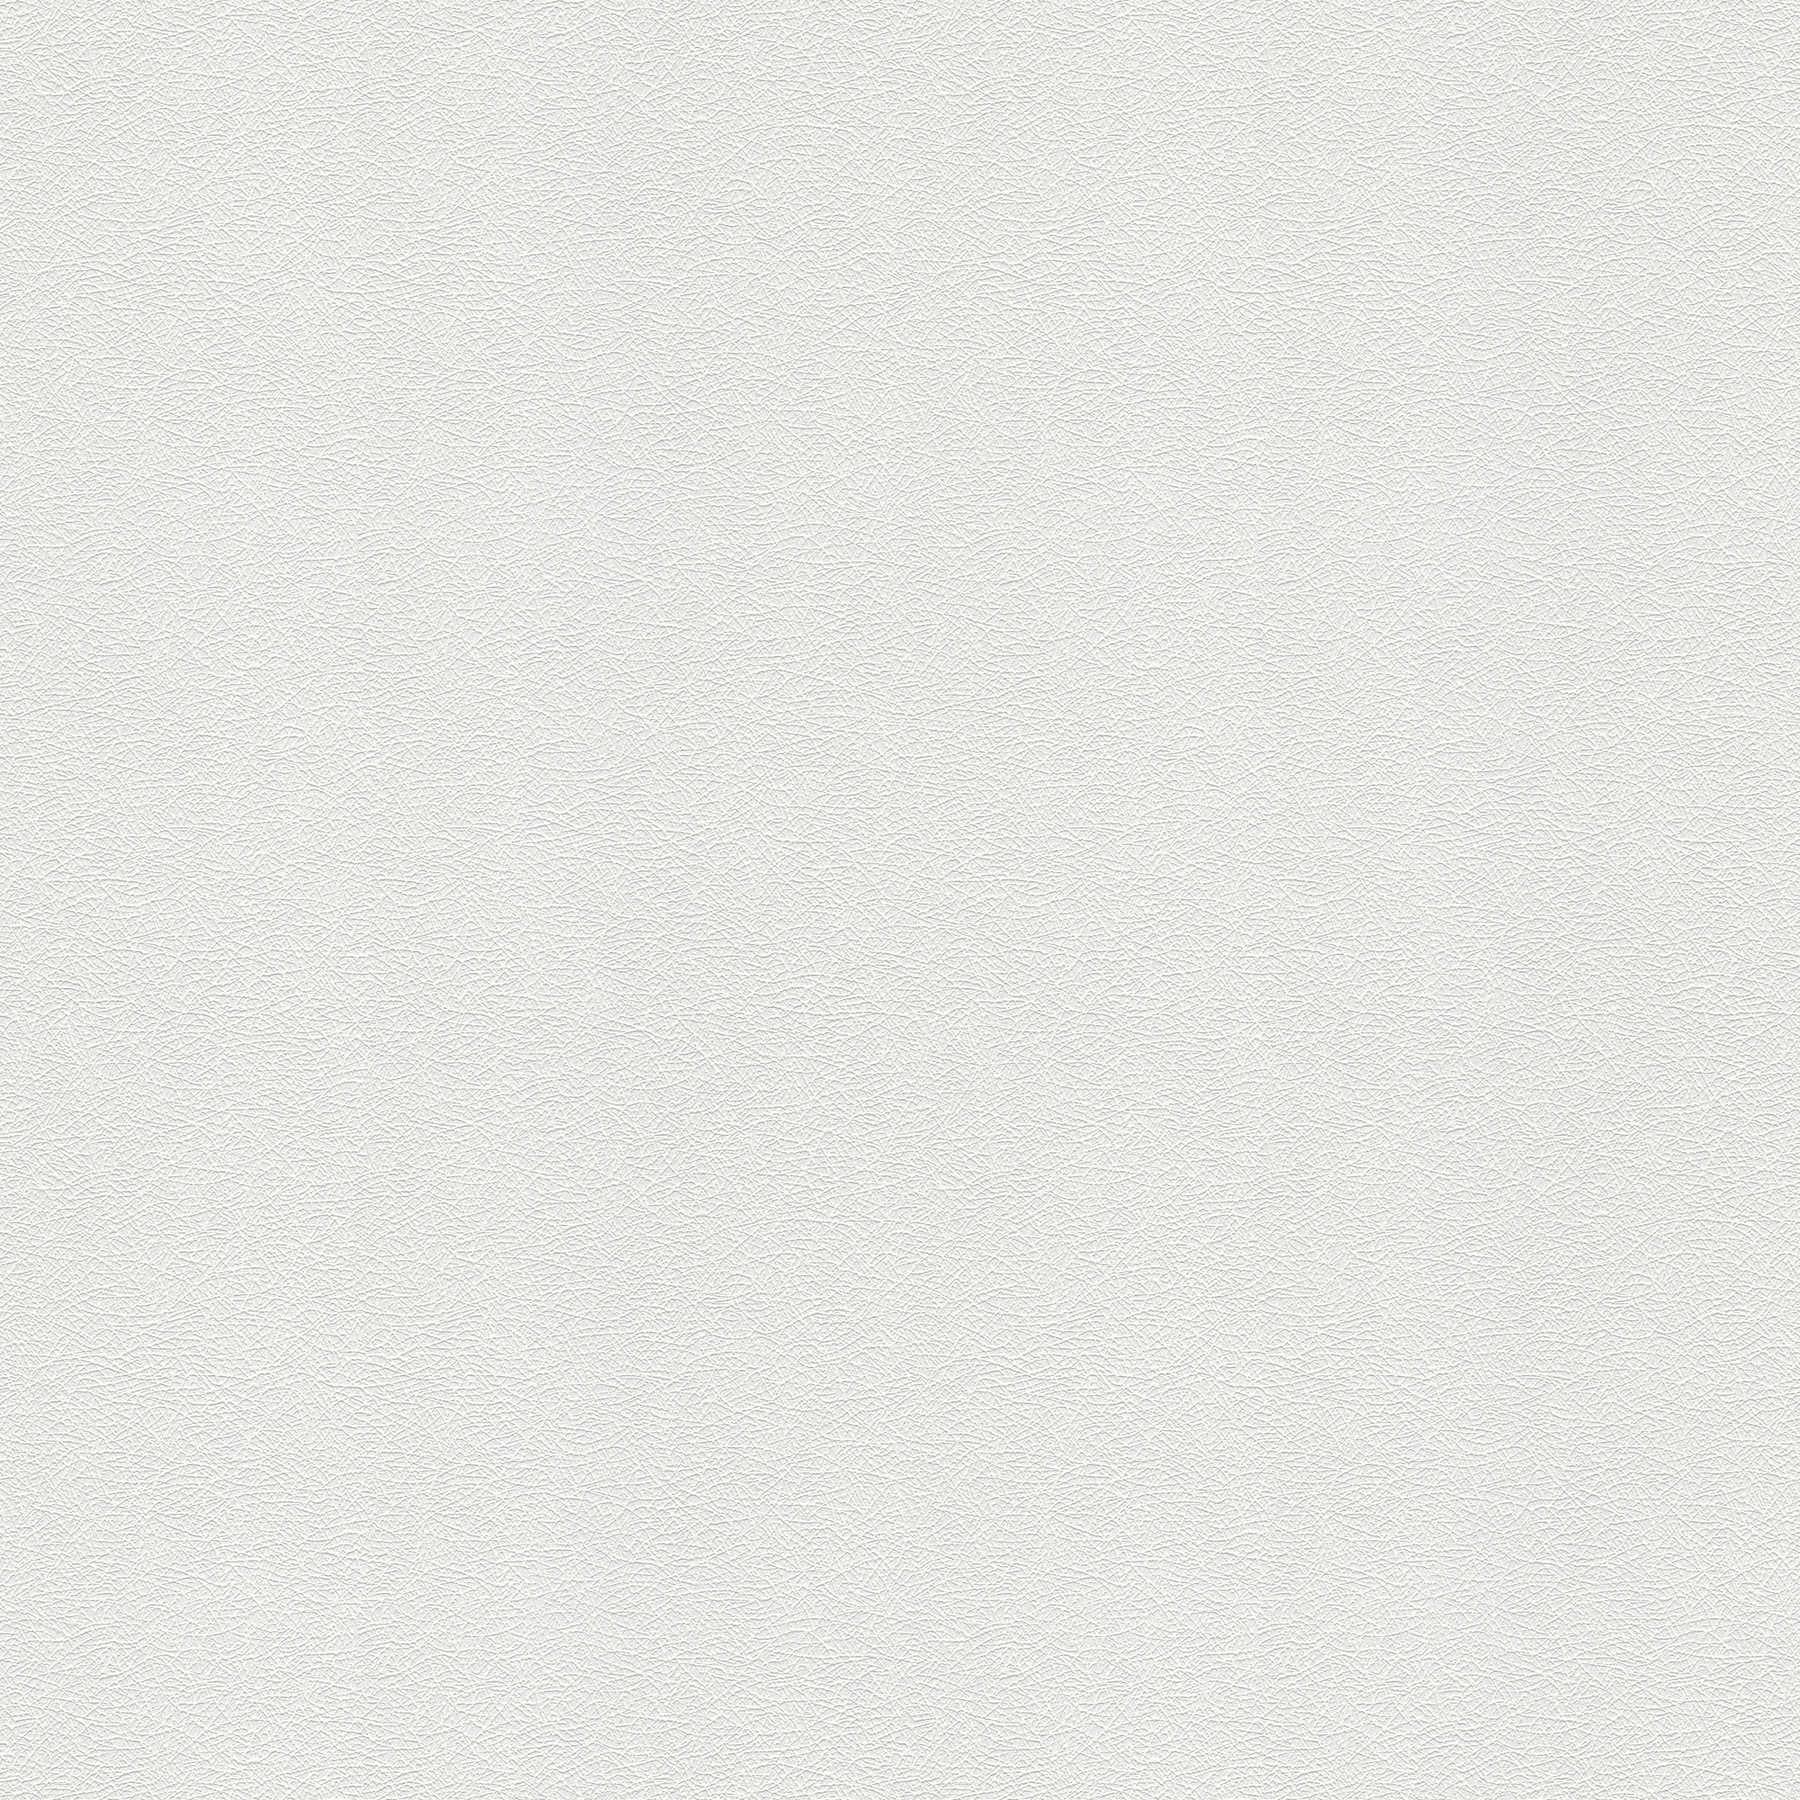 Carta da parati testurizzata bianca con motivo a fibre e aspetto tessuto - bianco
